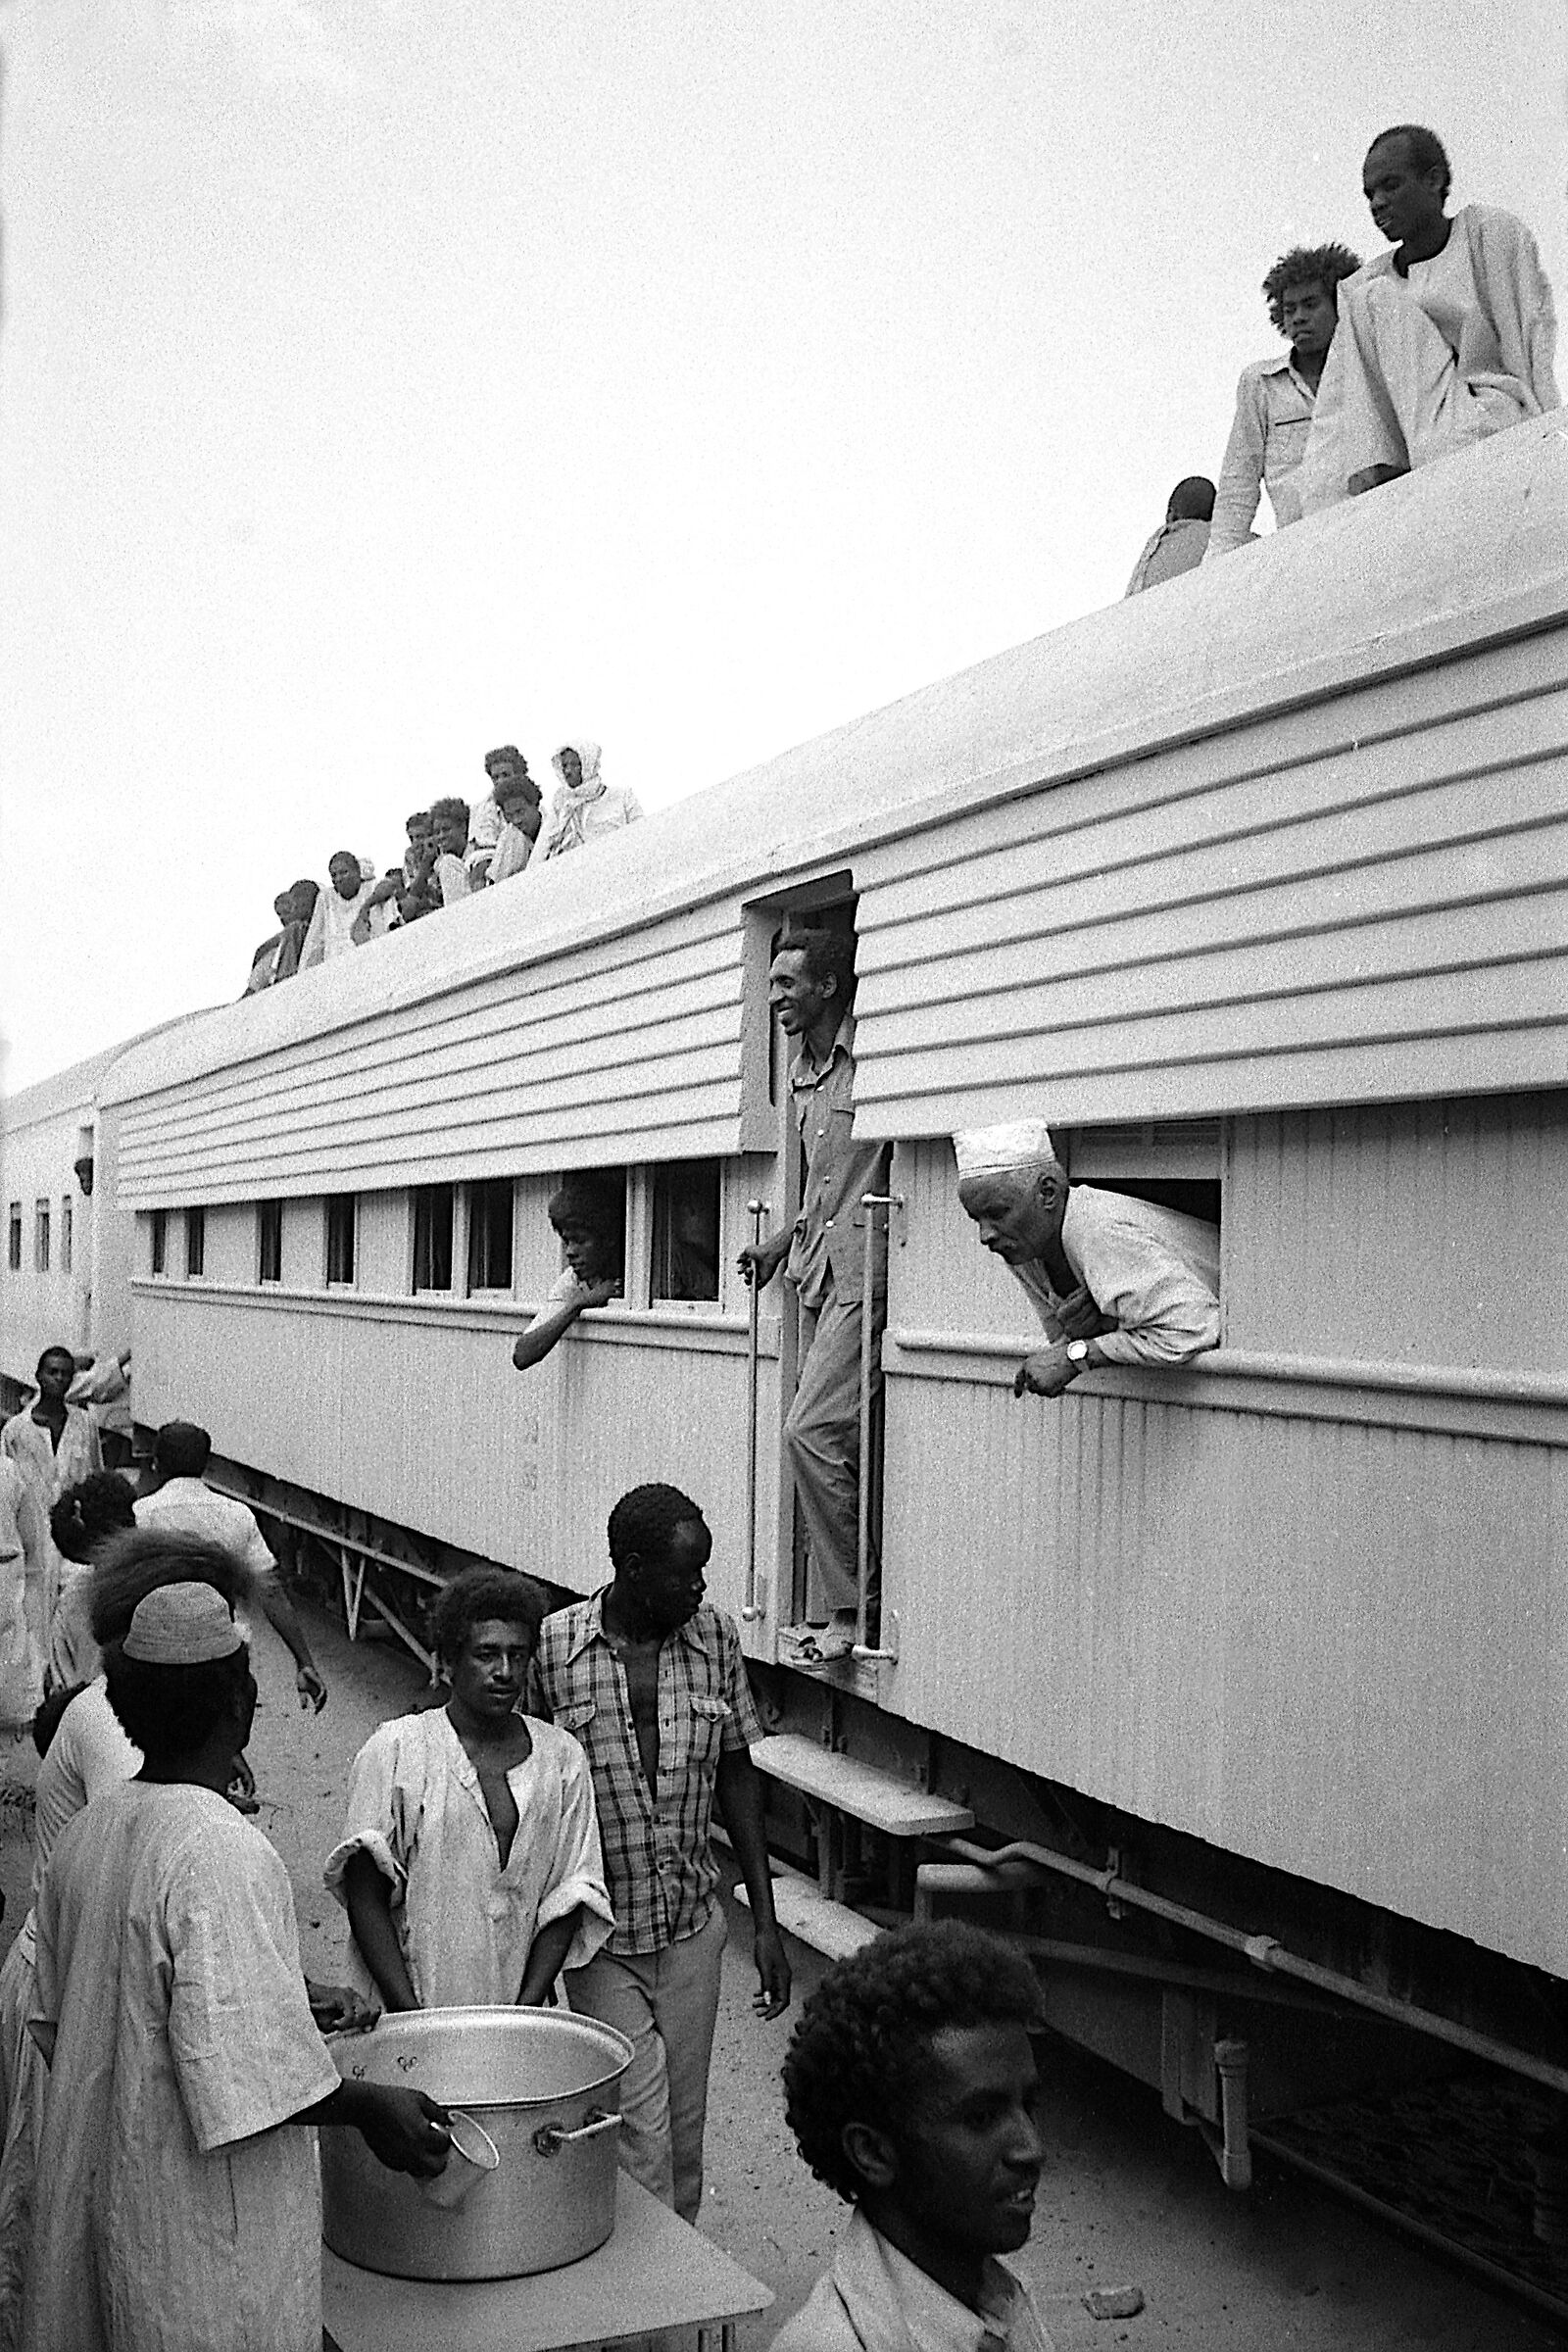 1984 Sudan "in viaggio verso sud...